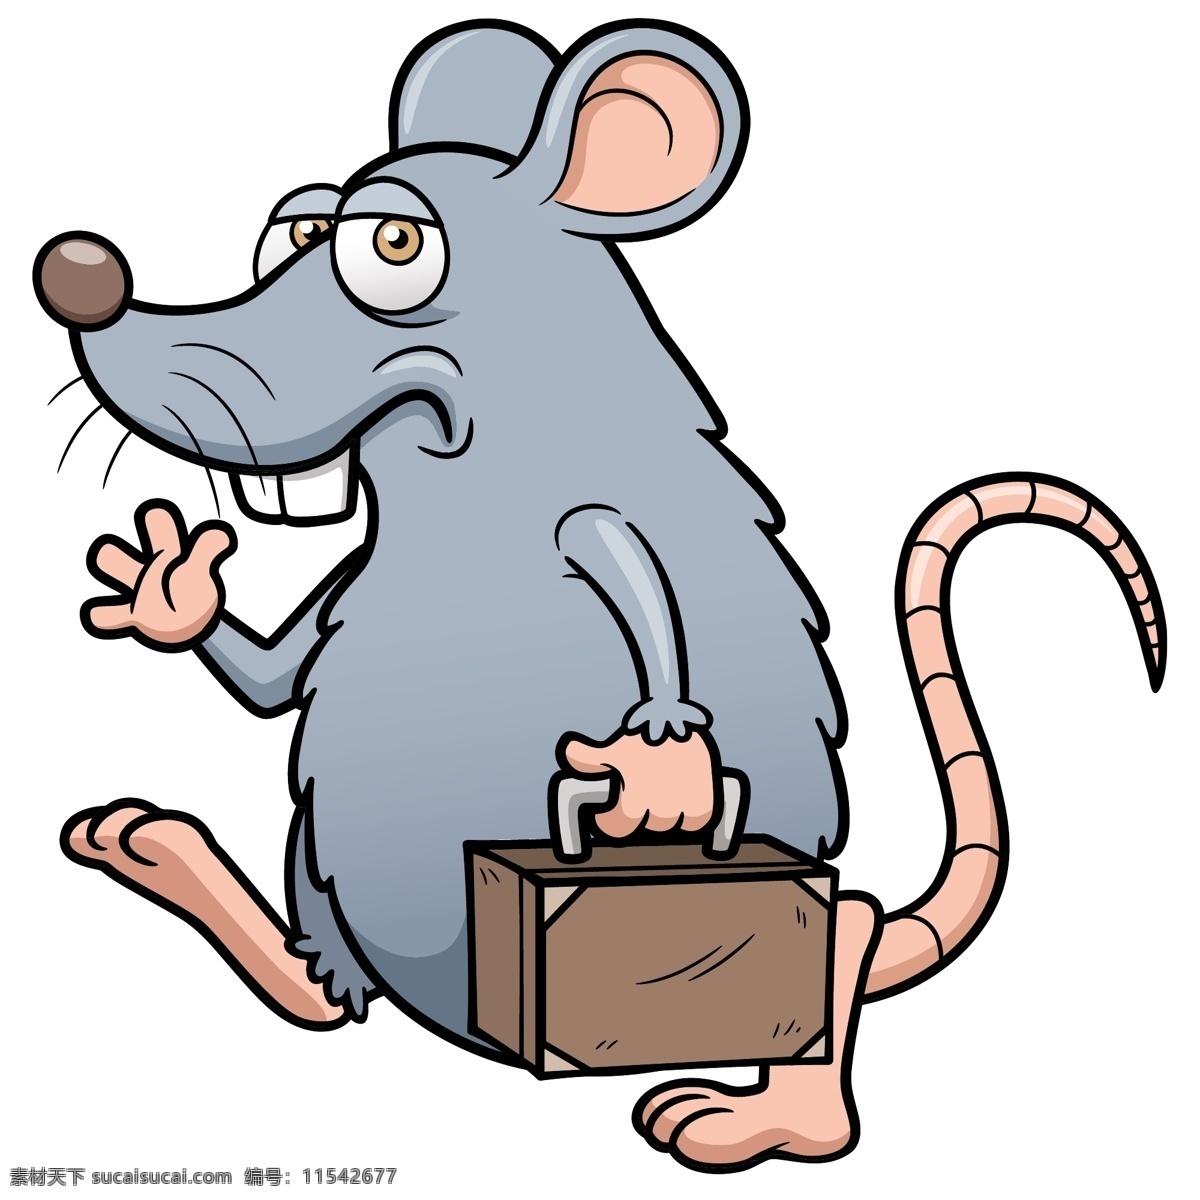 提 皮箱 的卡 通 老鼠 卡通耗子 卡通动物漫画 动物插画 动物插图 卡通动物 拟人化动物 卡通 动物 简笔画 漫画动物